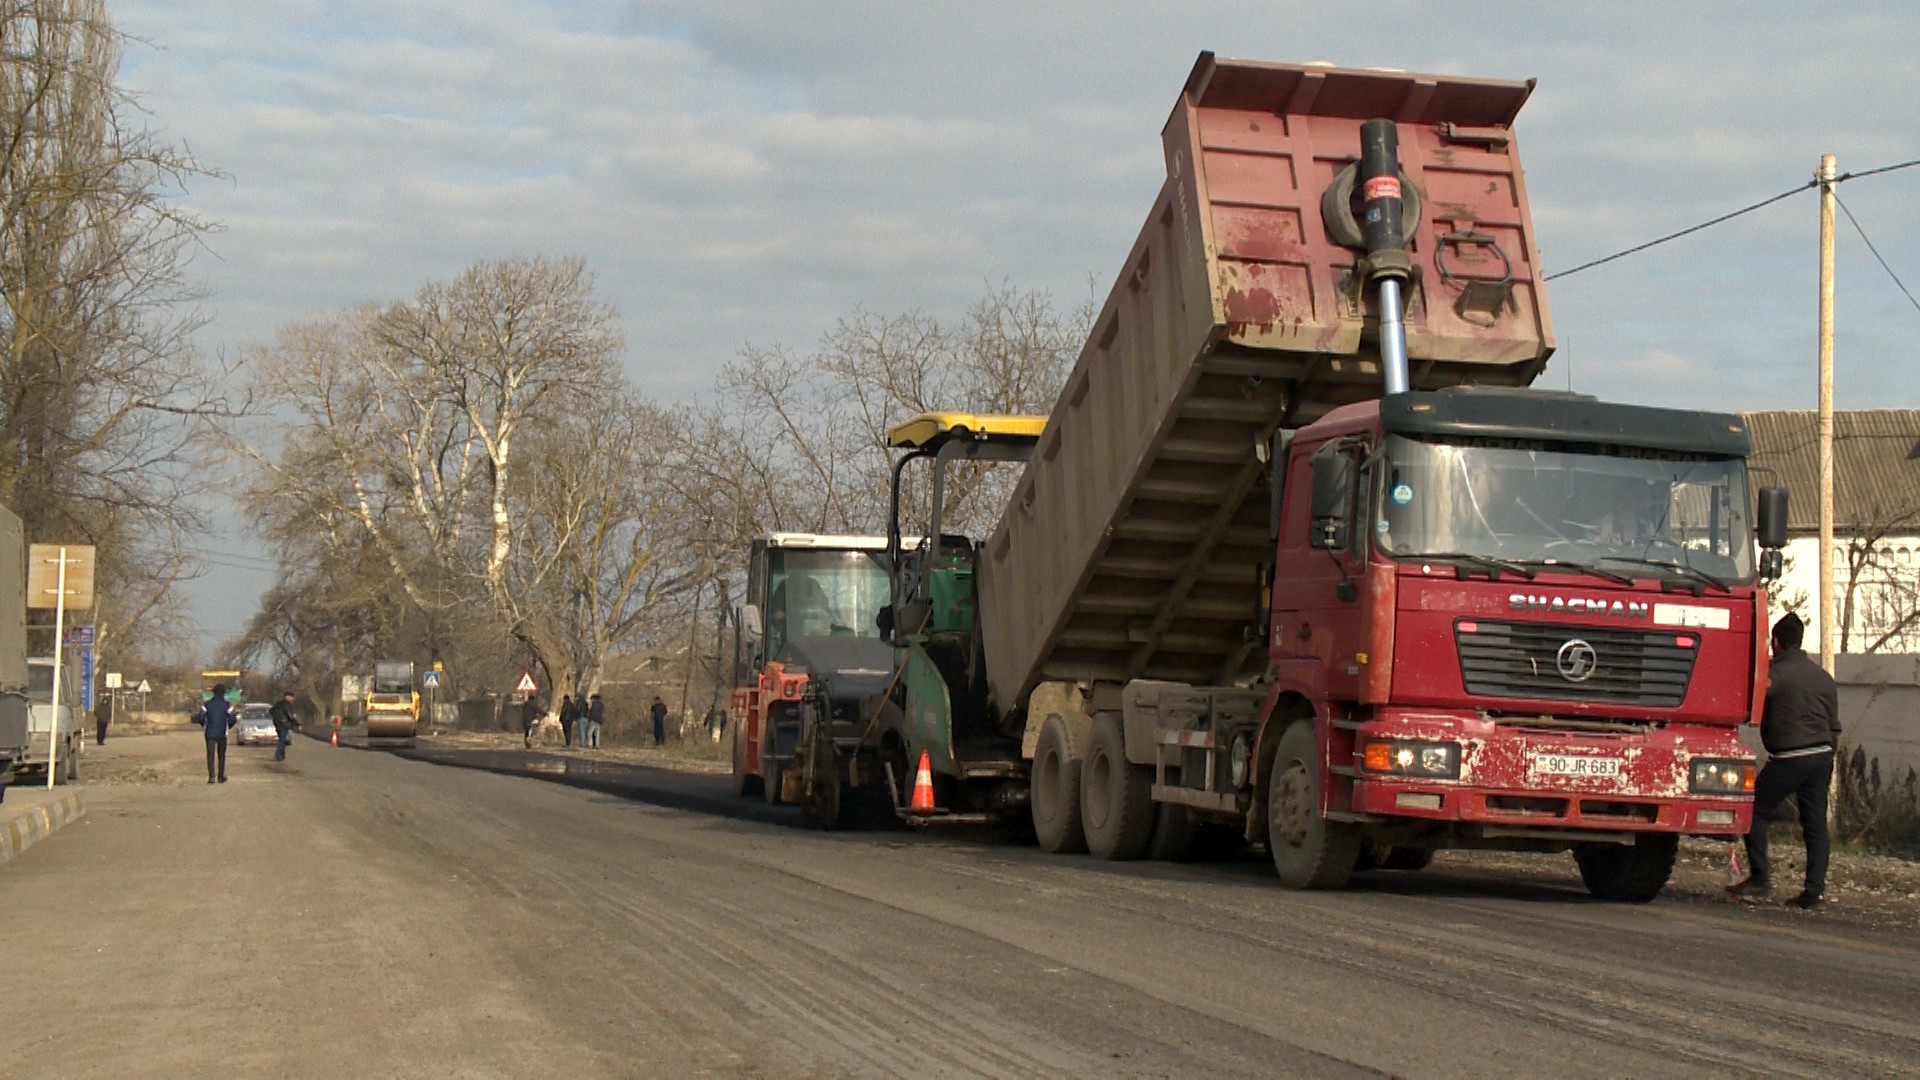 11 Gəndob-Xaçmaz-Yalama avtomobil yolunun 24 km-lik hissəsi bərpa olunur - VİDEO / FOTO